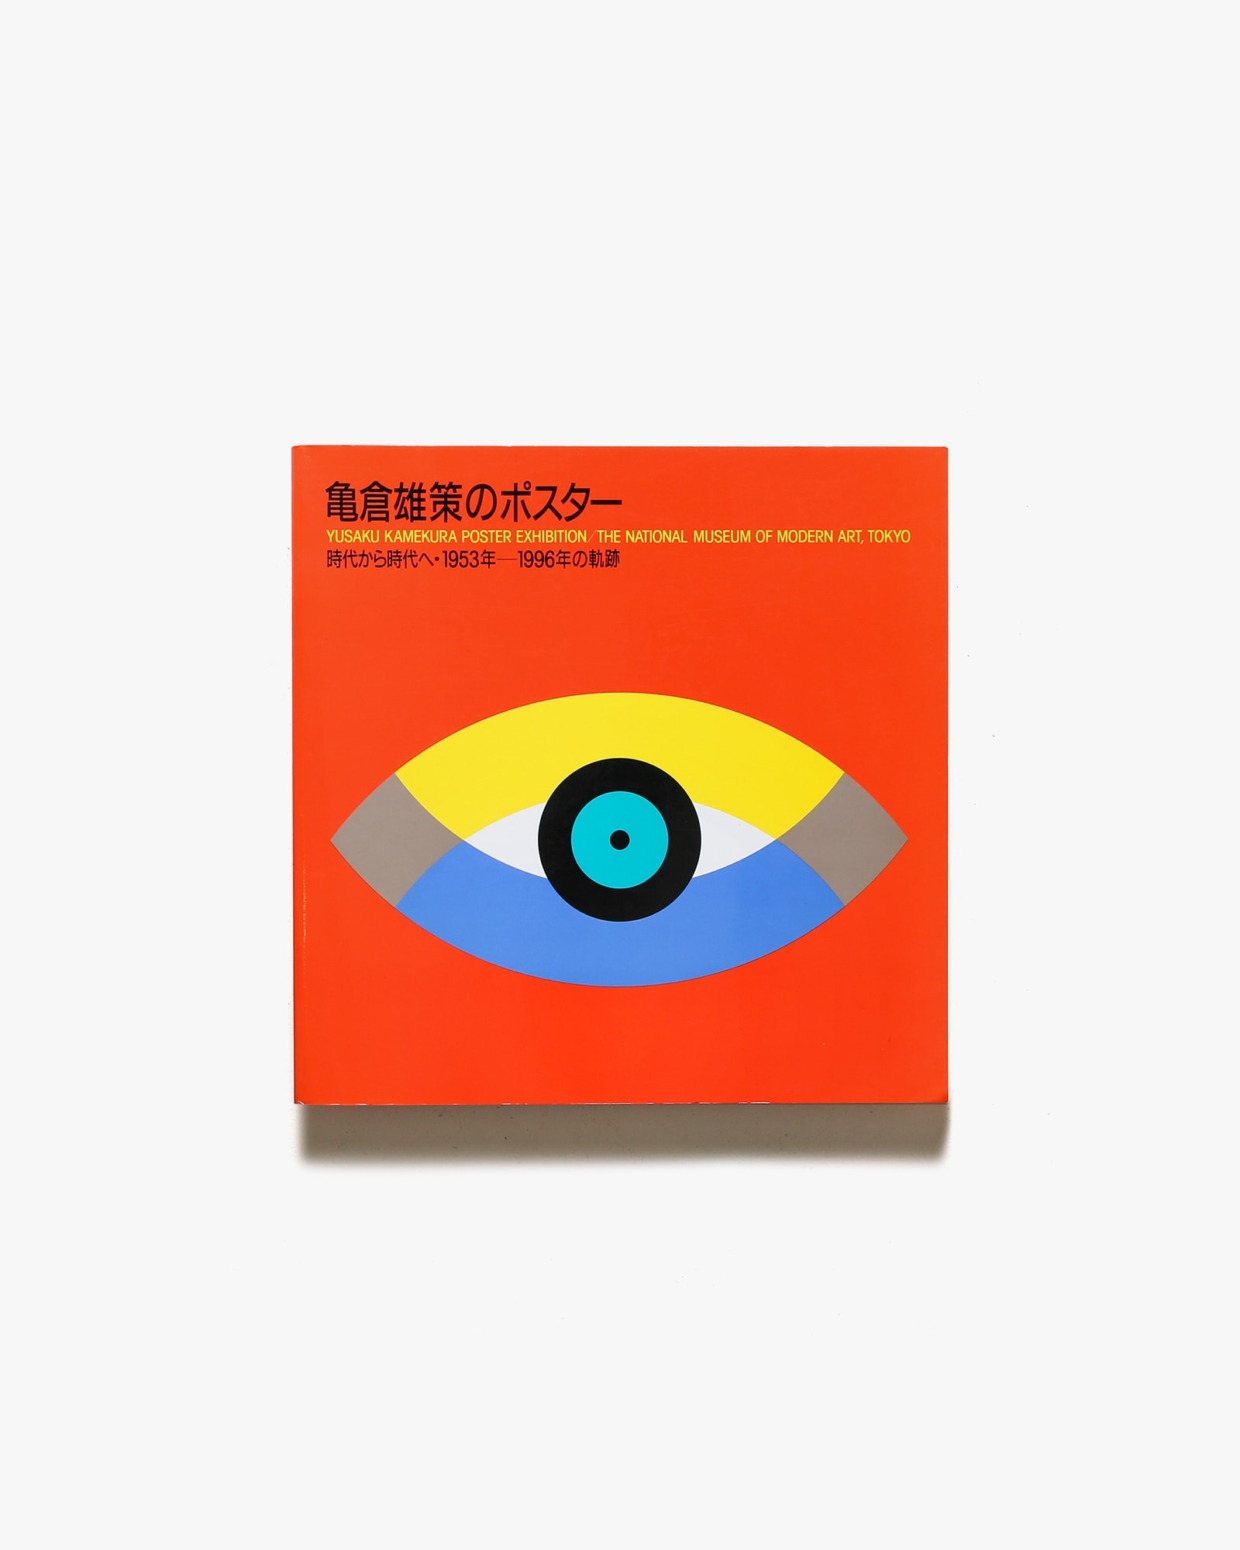 亀倉雄策のポスター 時代から時代へ 1953－1996年の軌跡 | 東京国立近代美術館